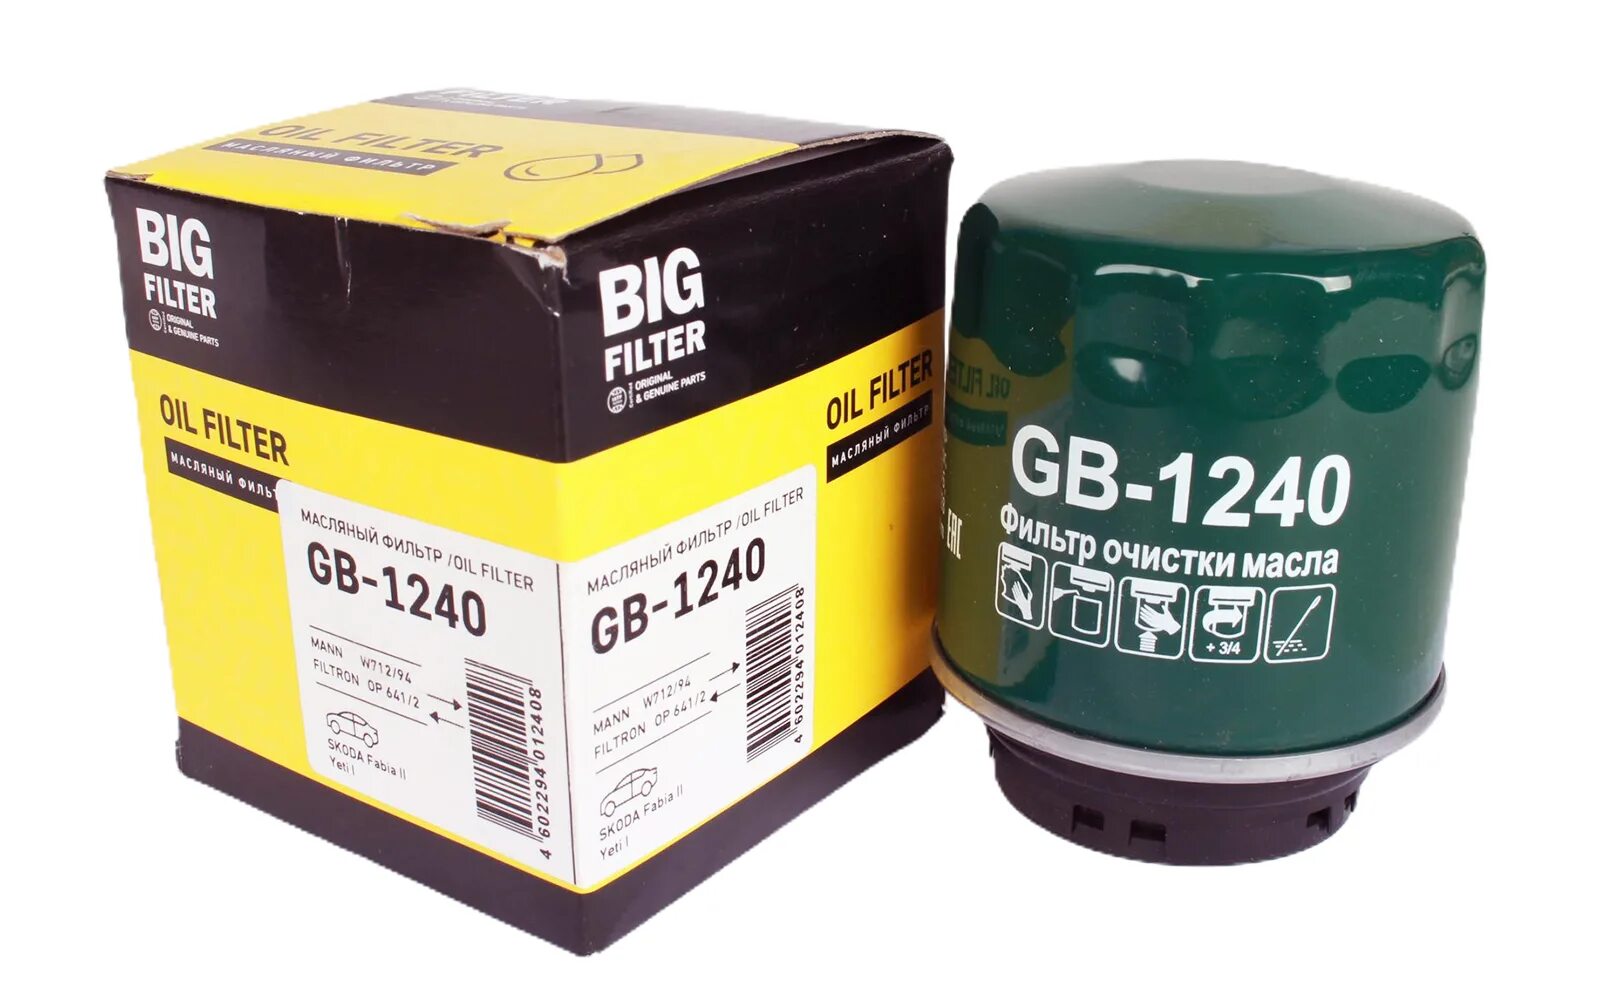 Big Filter GB-1240. Gb1240 фильтр масляный. GB-1107 фильтр масляный big Filter. Фильтр масляный big Filter gb207. Масло фильтр отзывы